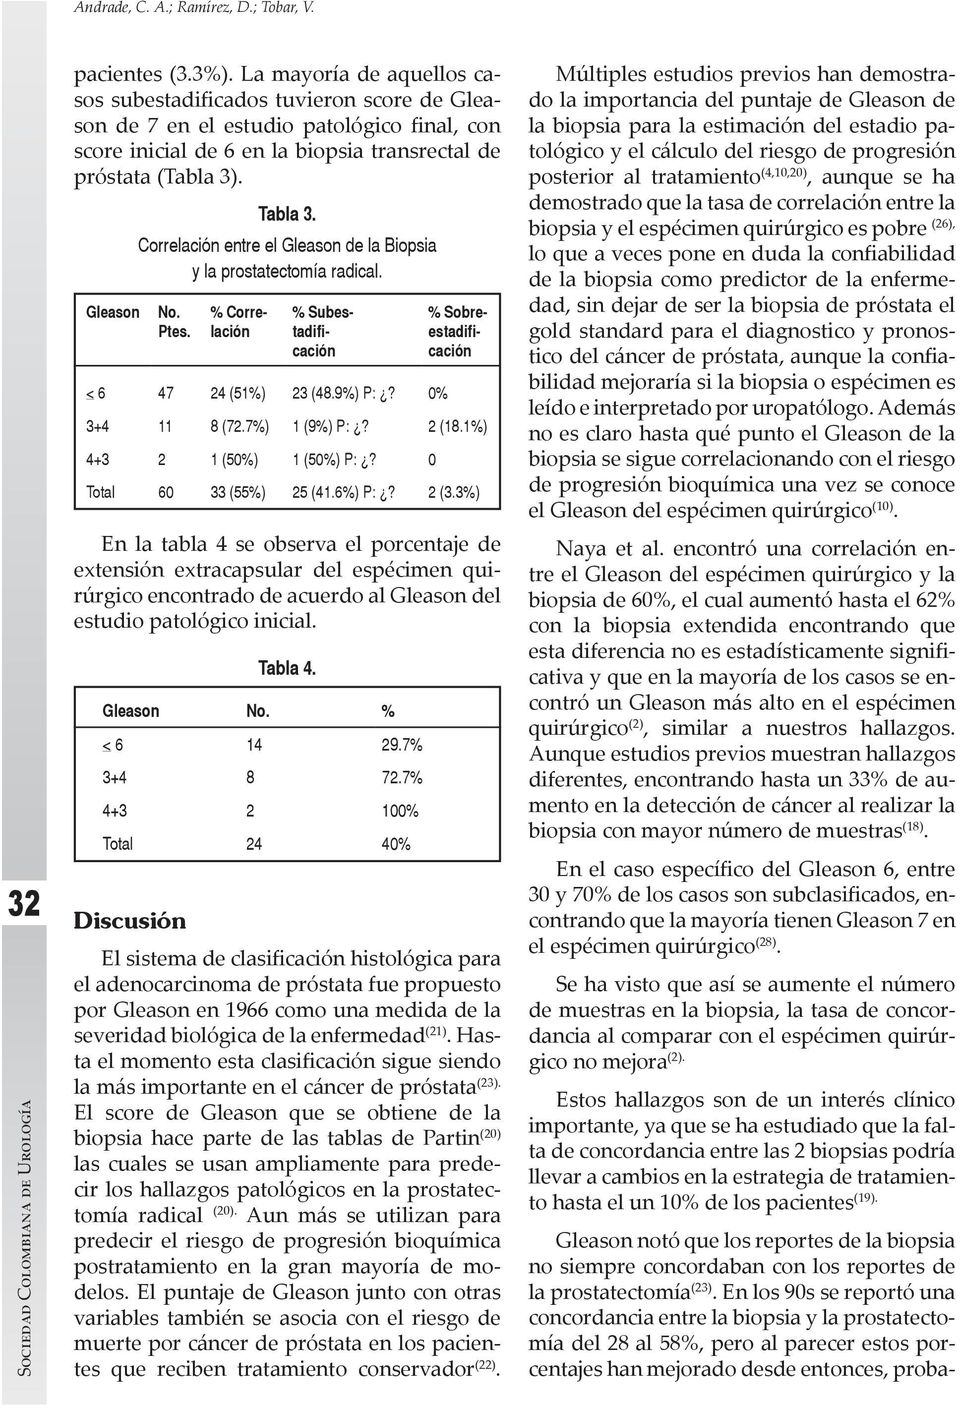 Correlación entre el Gleason de la Biopsia y la prostatectomía radical. No. Ptes.